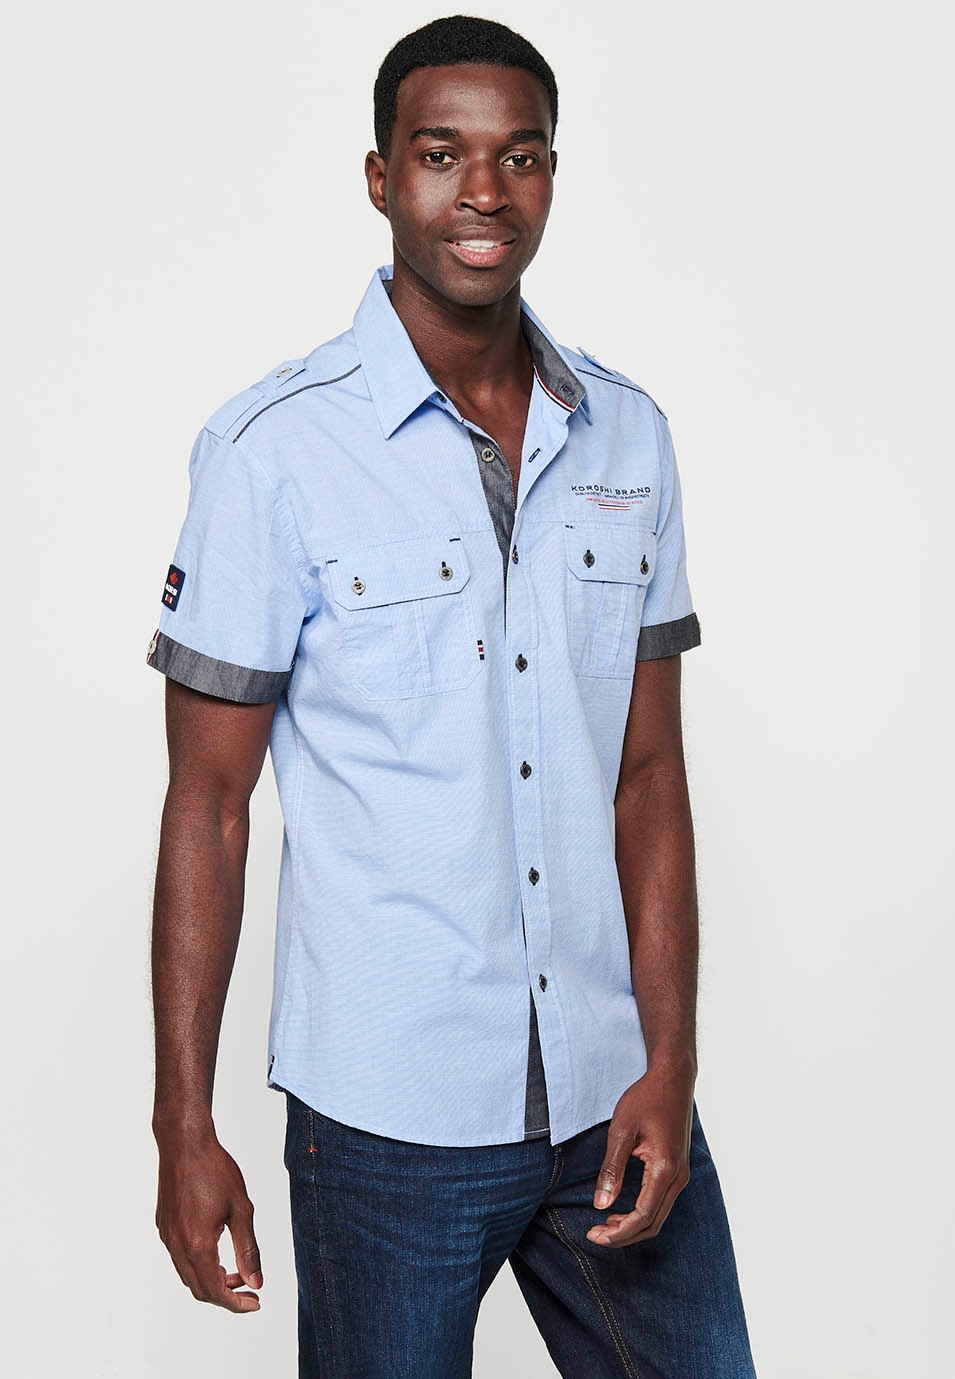 Cotton shirt, short sleeve, shoulder details, blue color for men 4